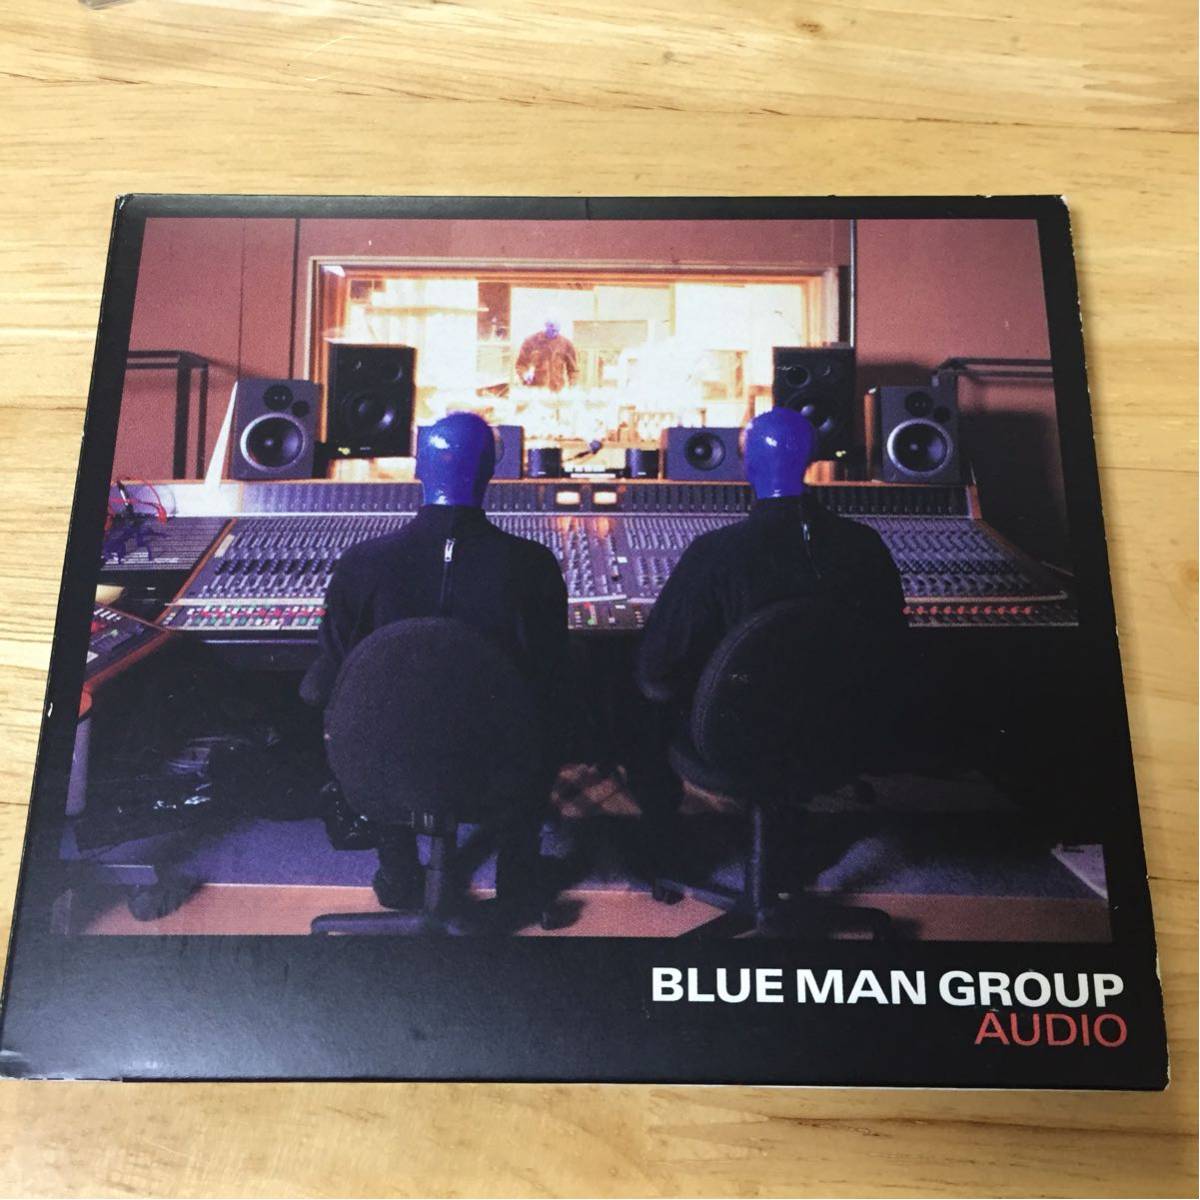 BLUE MAN GROUP ブルーマングループ AUDIO CD New York ニューヨーク ブロードウェイ ミュージカル 来日公演 決定